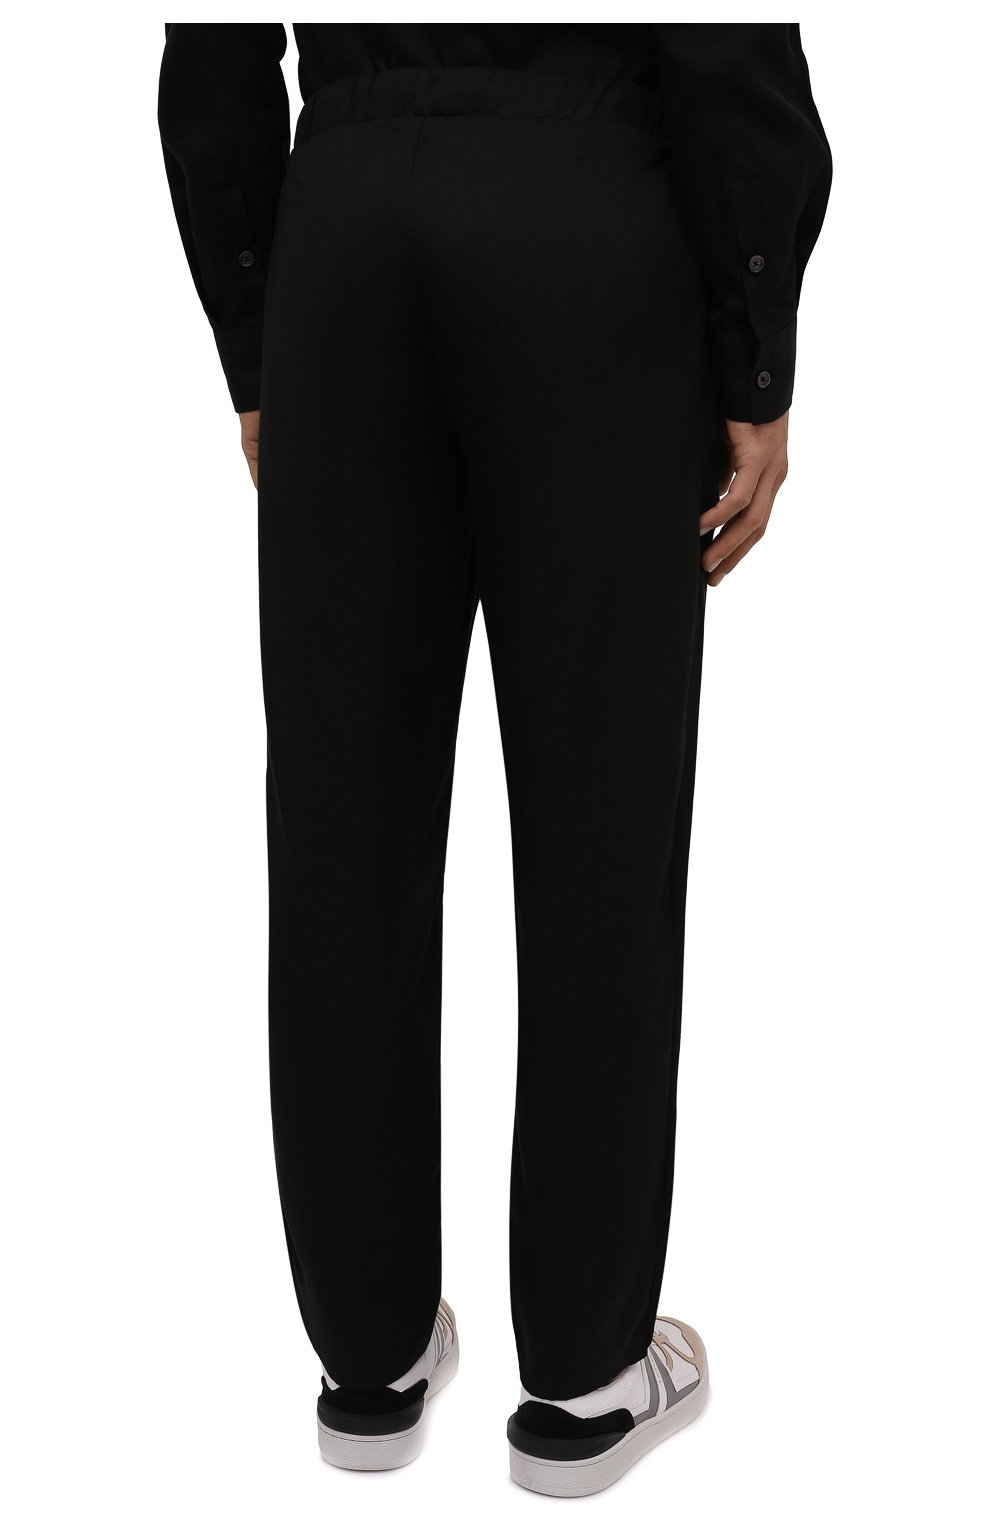 Мужские брюки LIMITATO черного цвета, арт. 0CEANS/L0UNGE PANTS | Фото 4 (Длина (брюки, джинсы): Стандартные; Случай: Повседневный; Стили: Минимализм; Материал внешний: Растительное волокно)